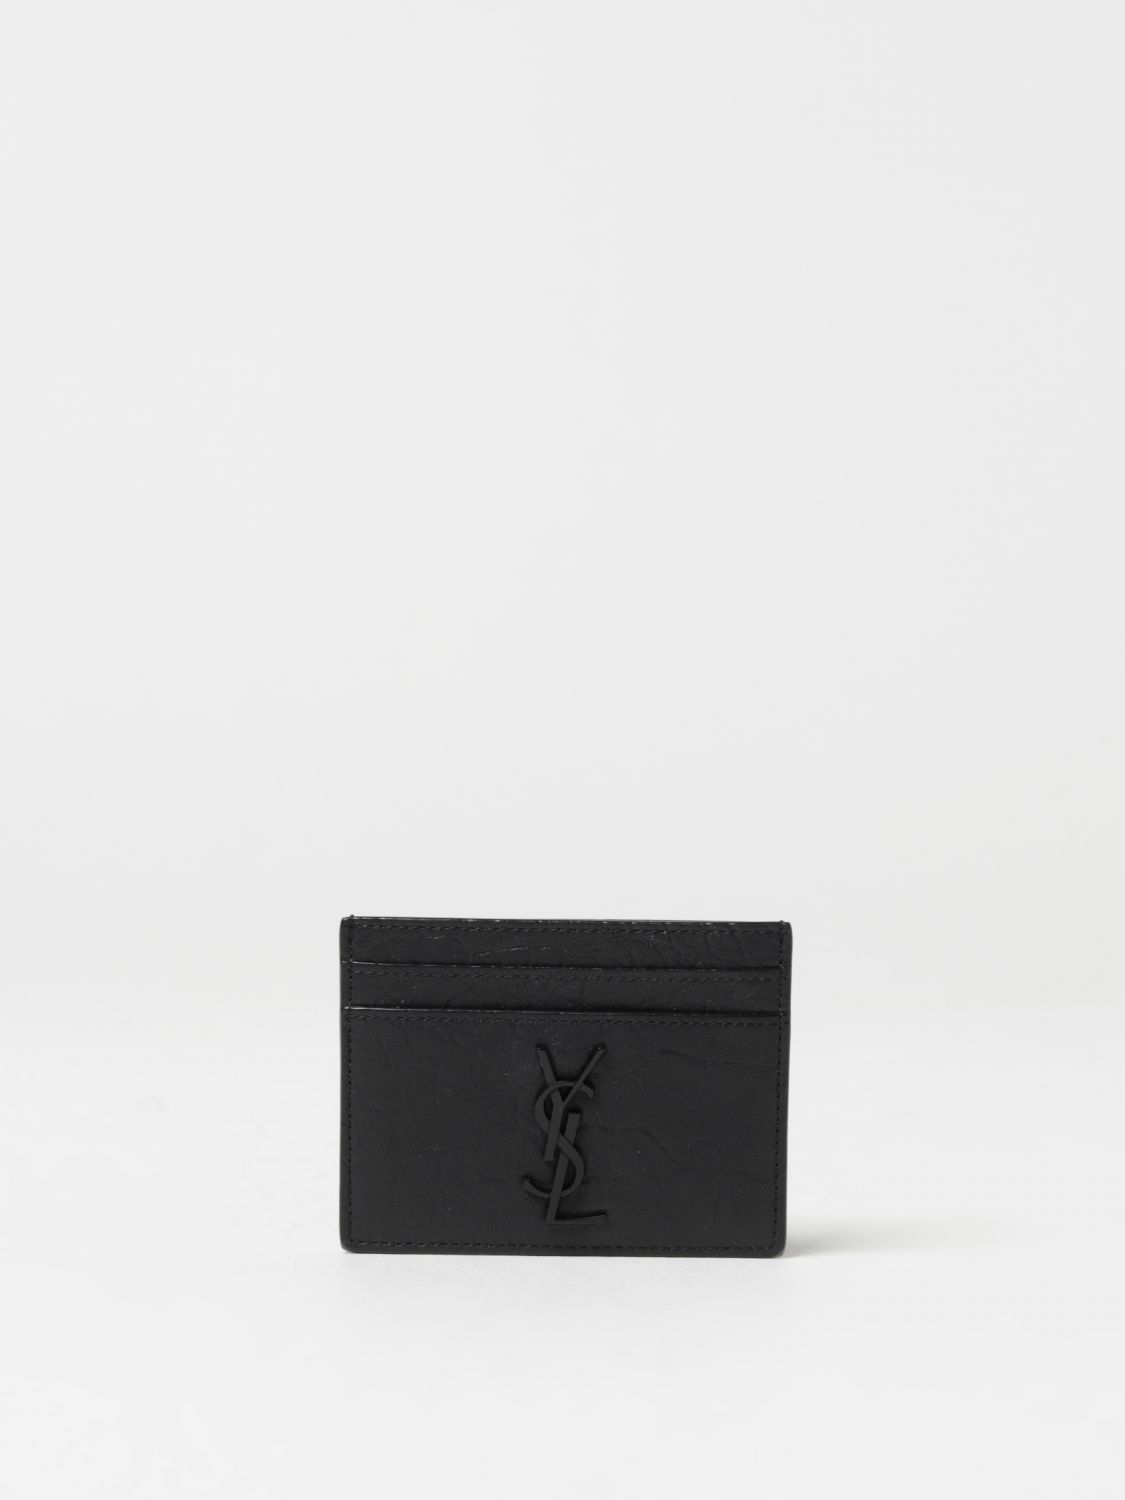 Saint Laurent YSL Men Wallet in Black